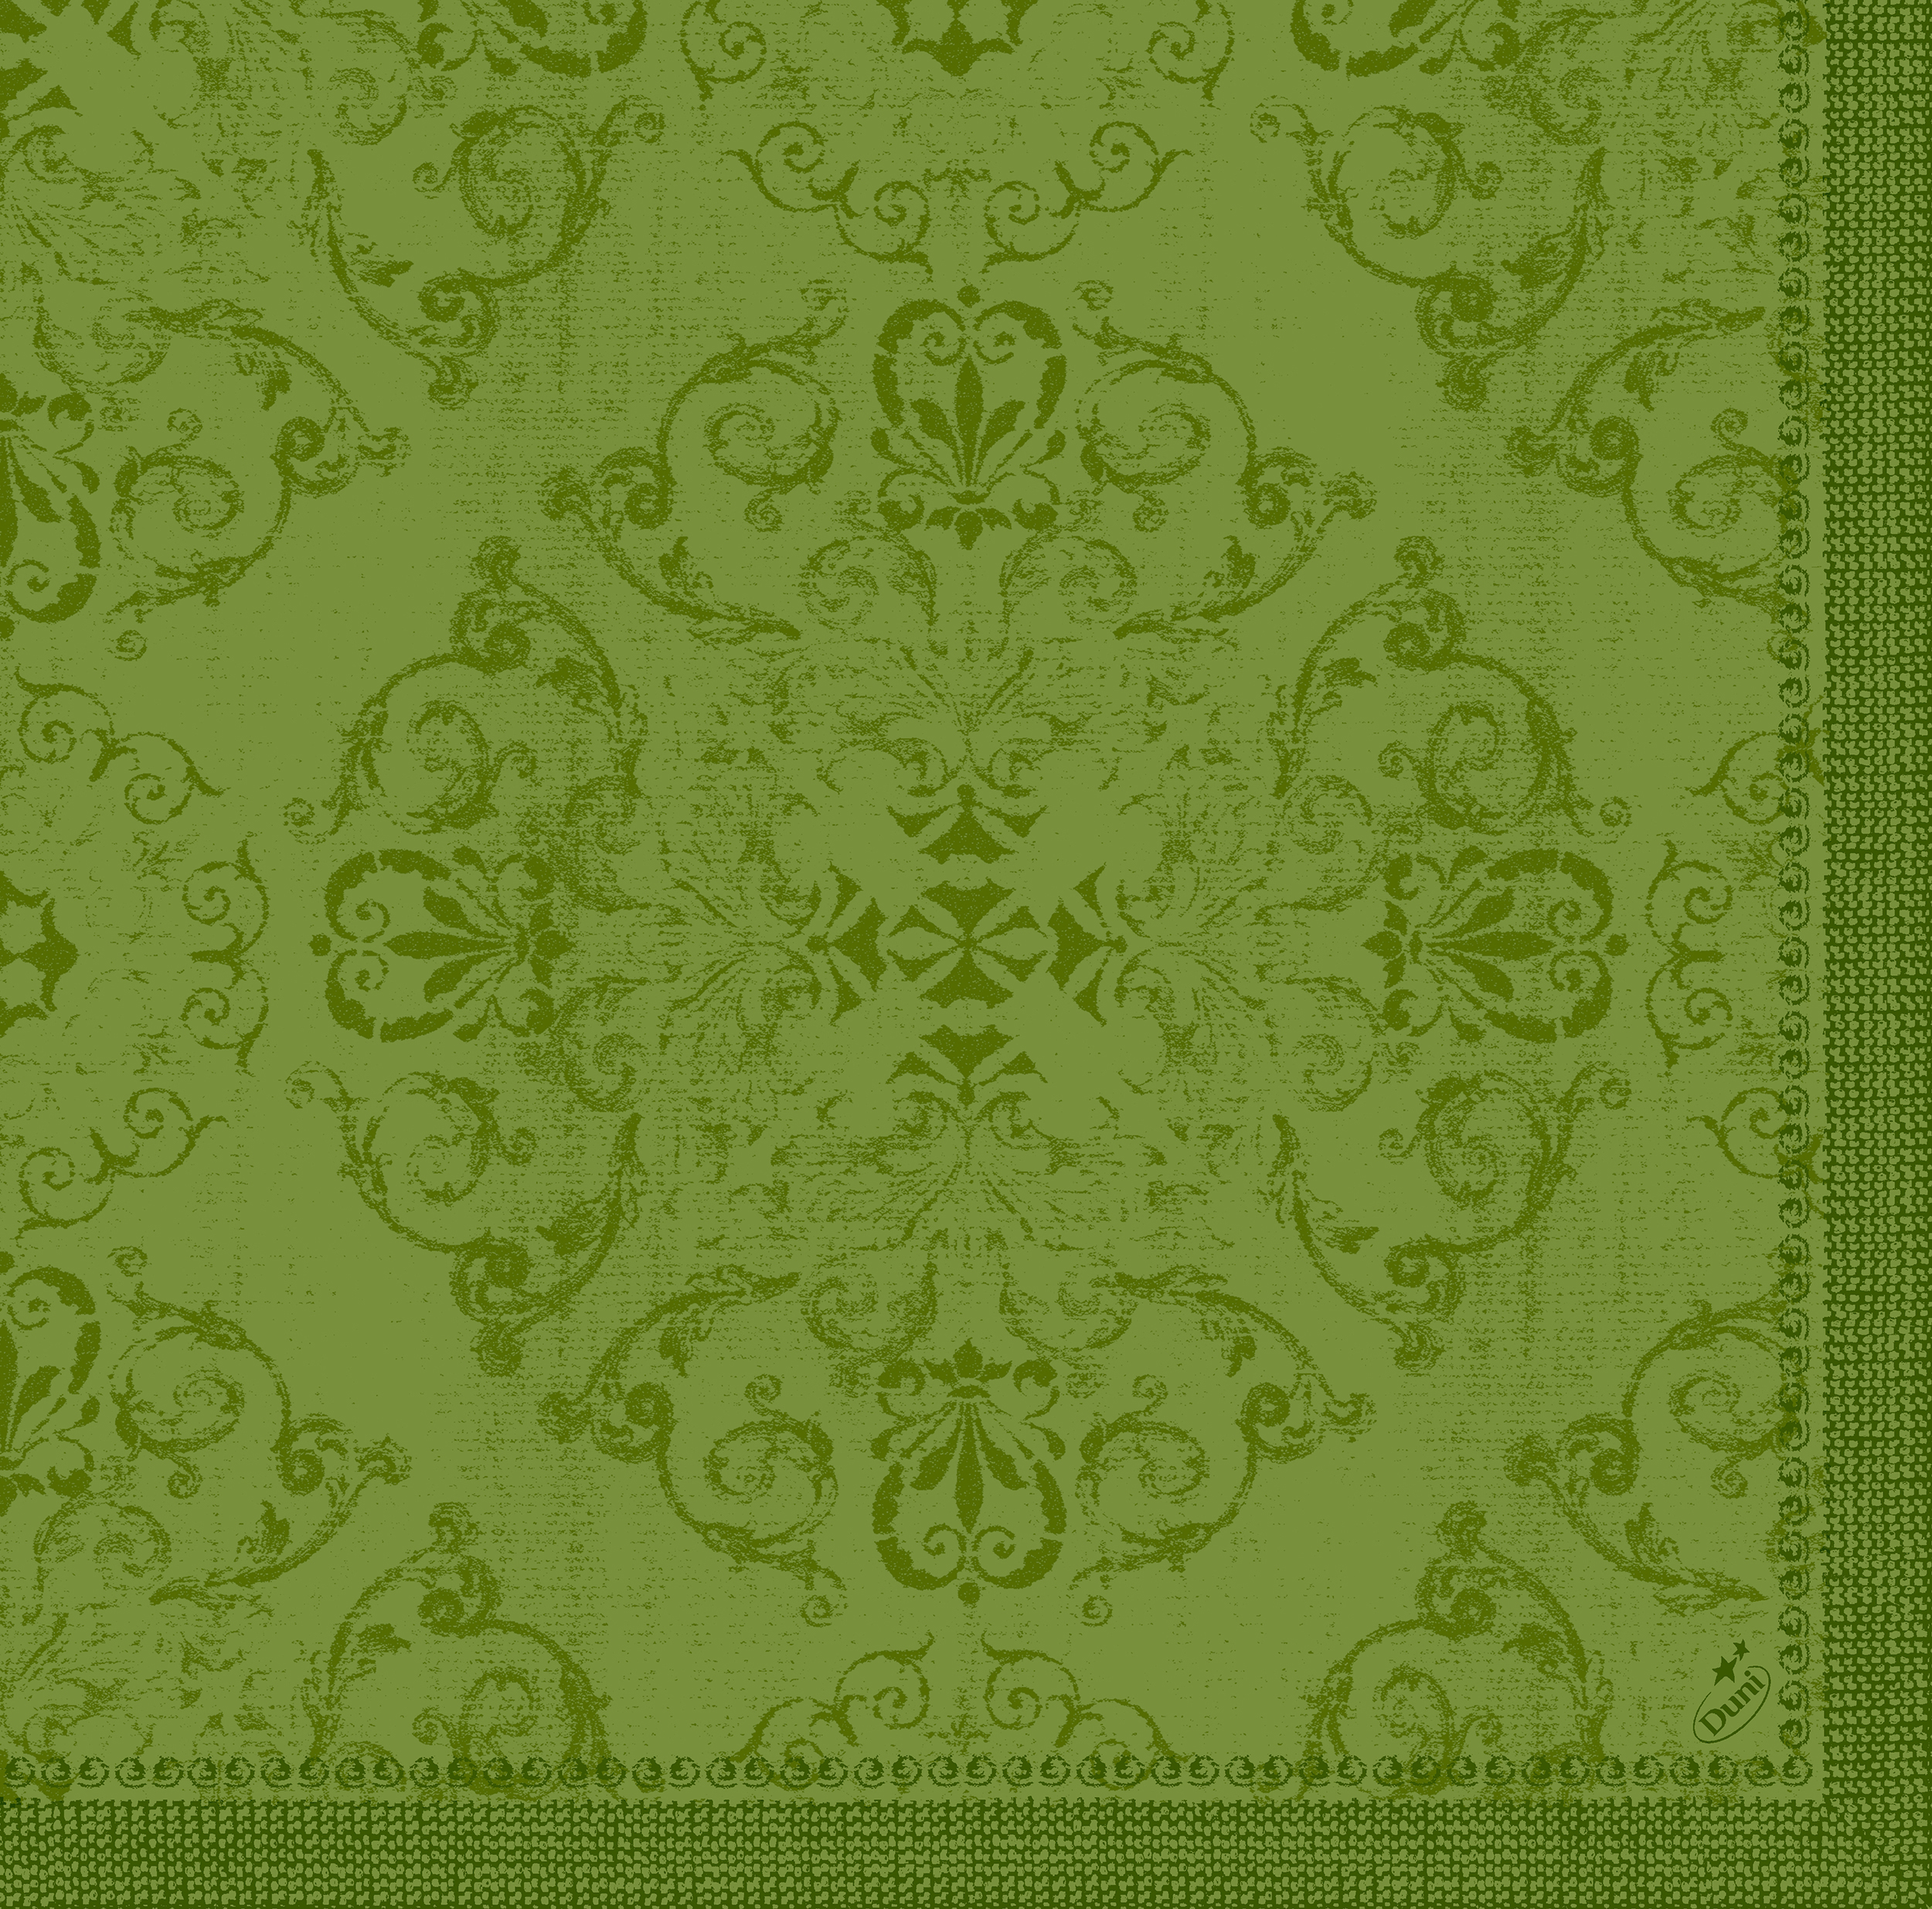 Dunilin-Servietten 1/4 Falz, 40 x 40 cm, Opulent leaf green